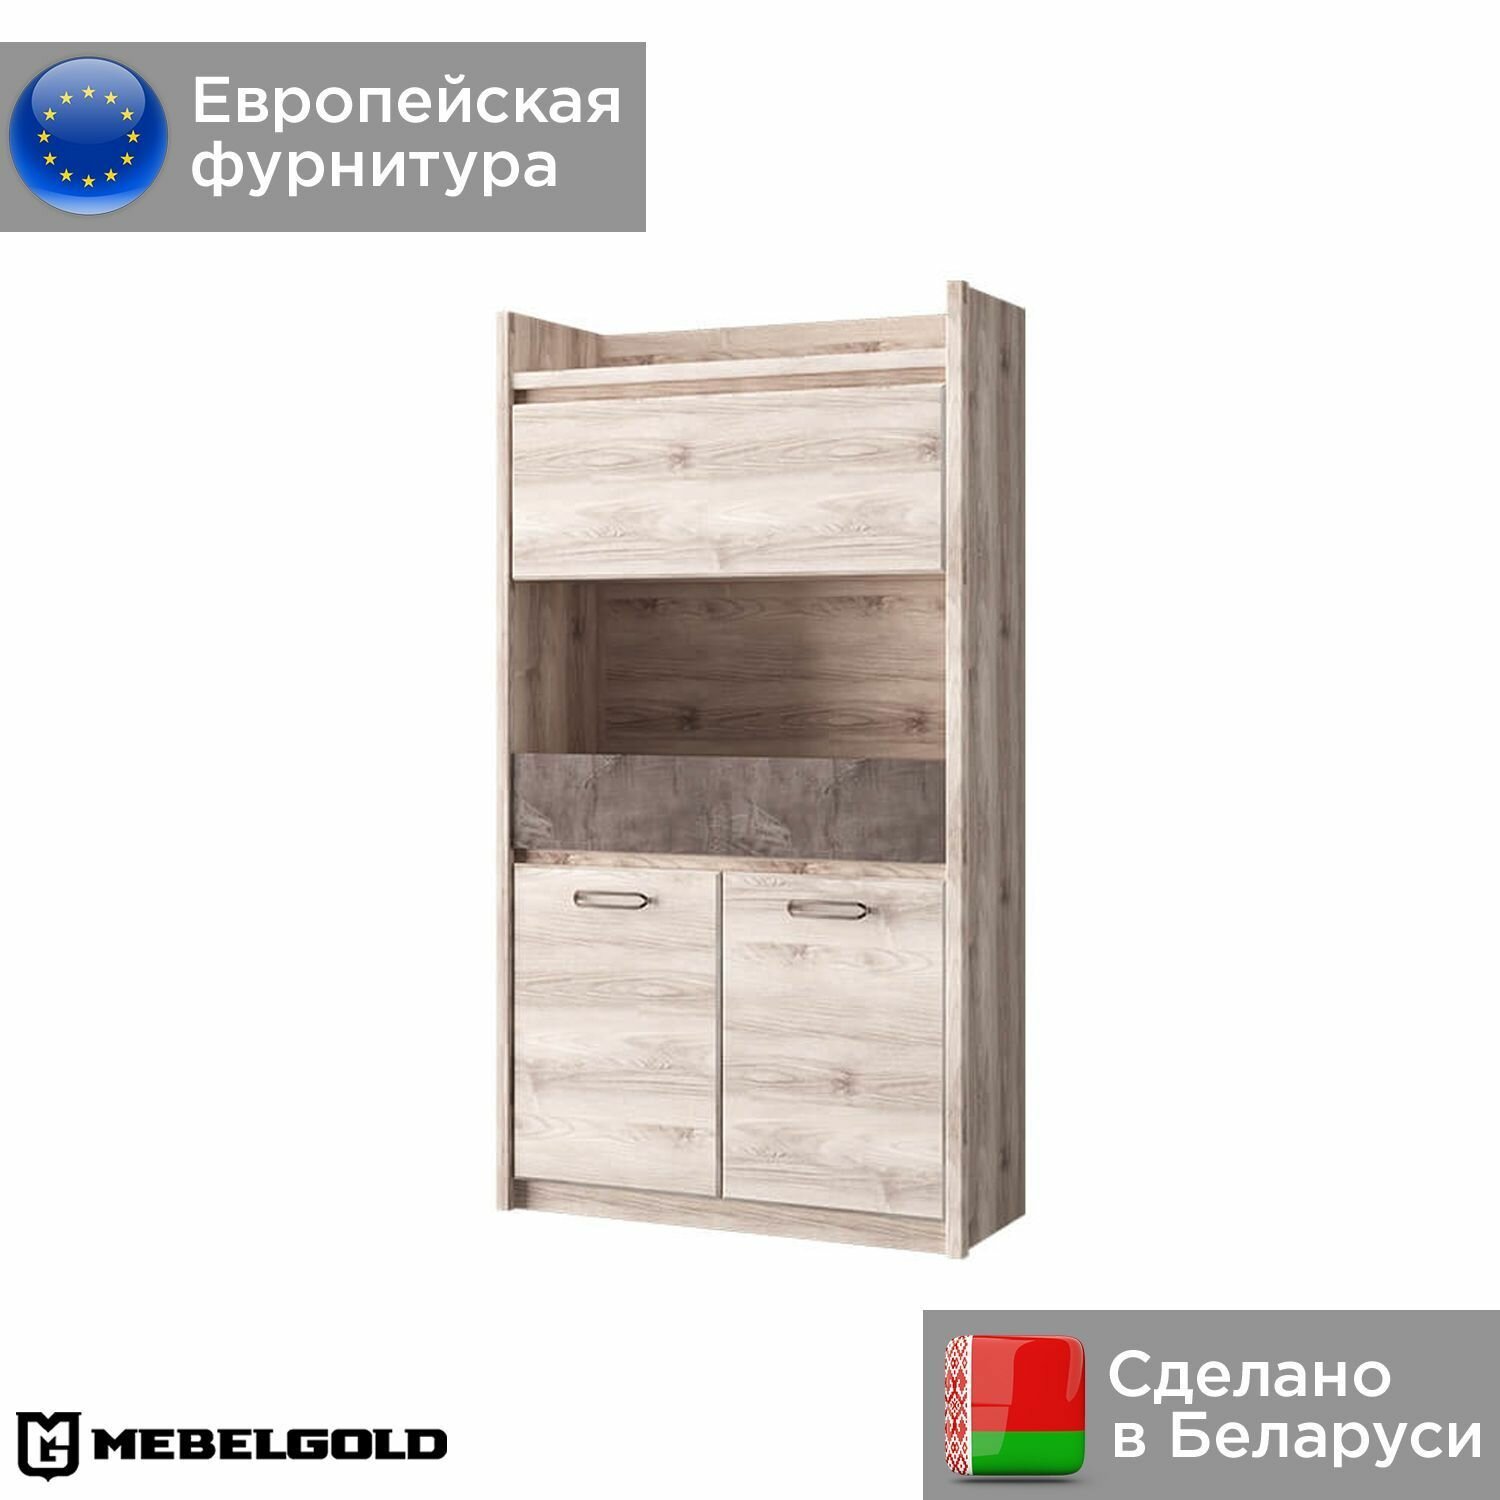 Джаз Стеллаж, белорусский, деревянный, модульный 3D1SN МебельГолд